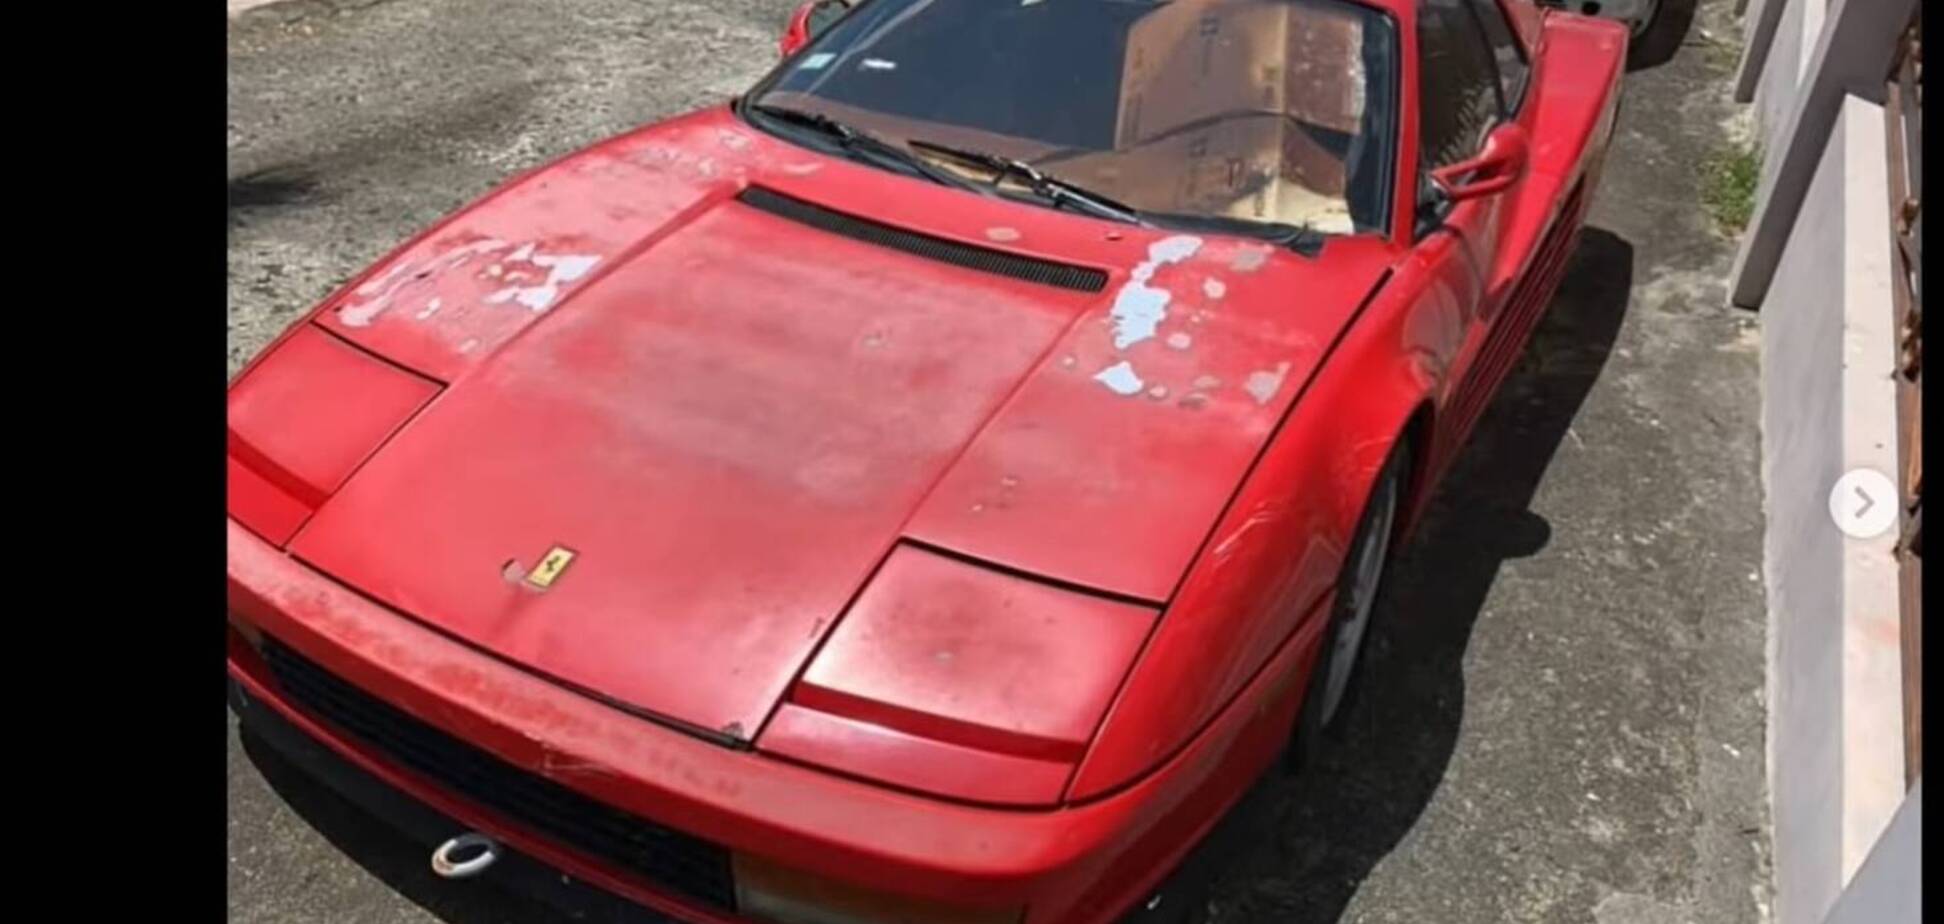 Эксклюзивная Ferrari простояла заброшенной у дороги 17 лет